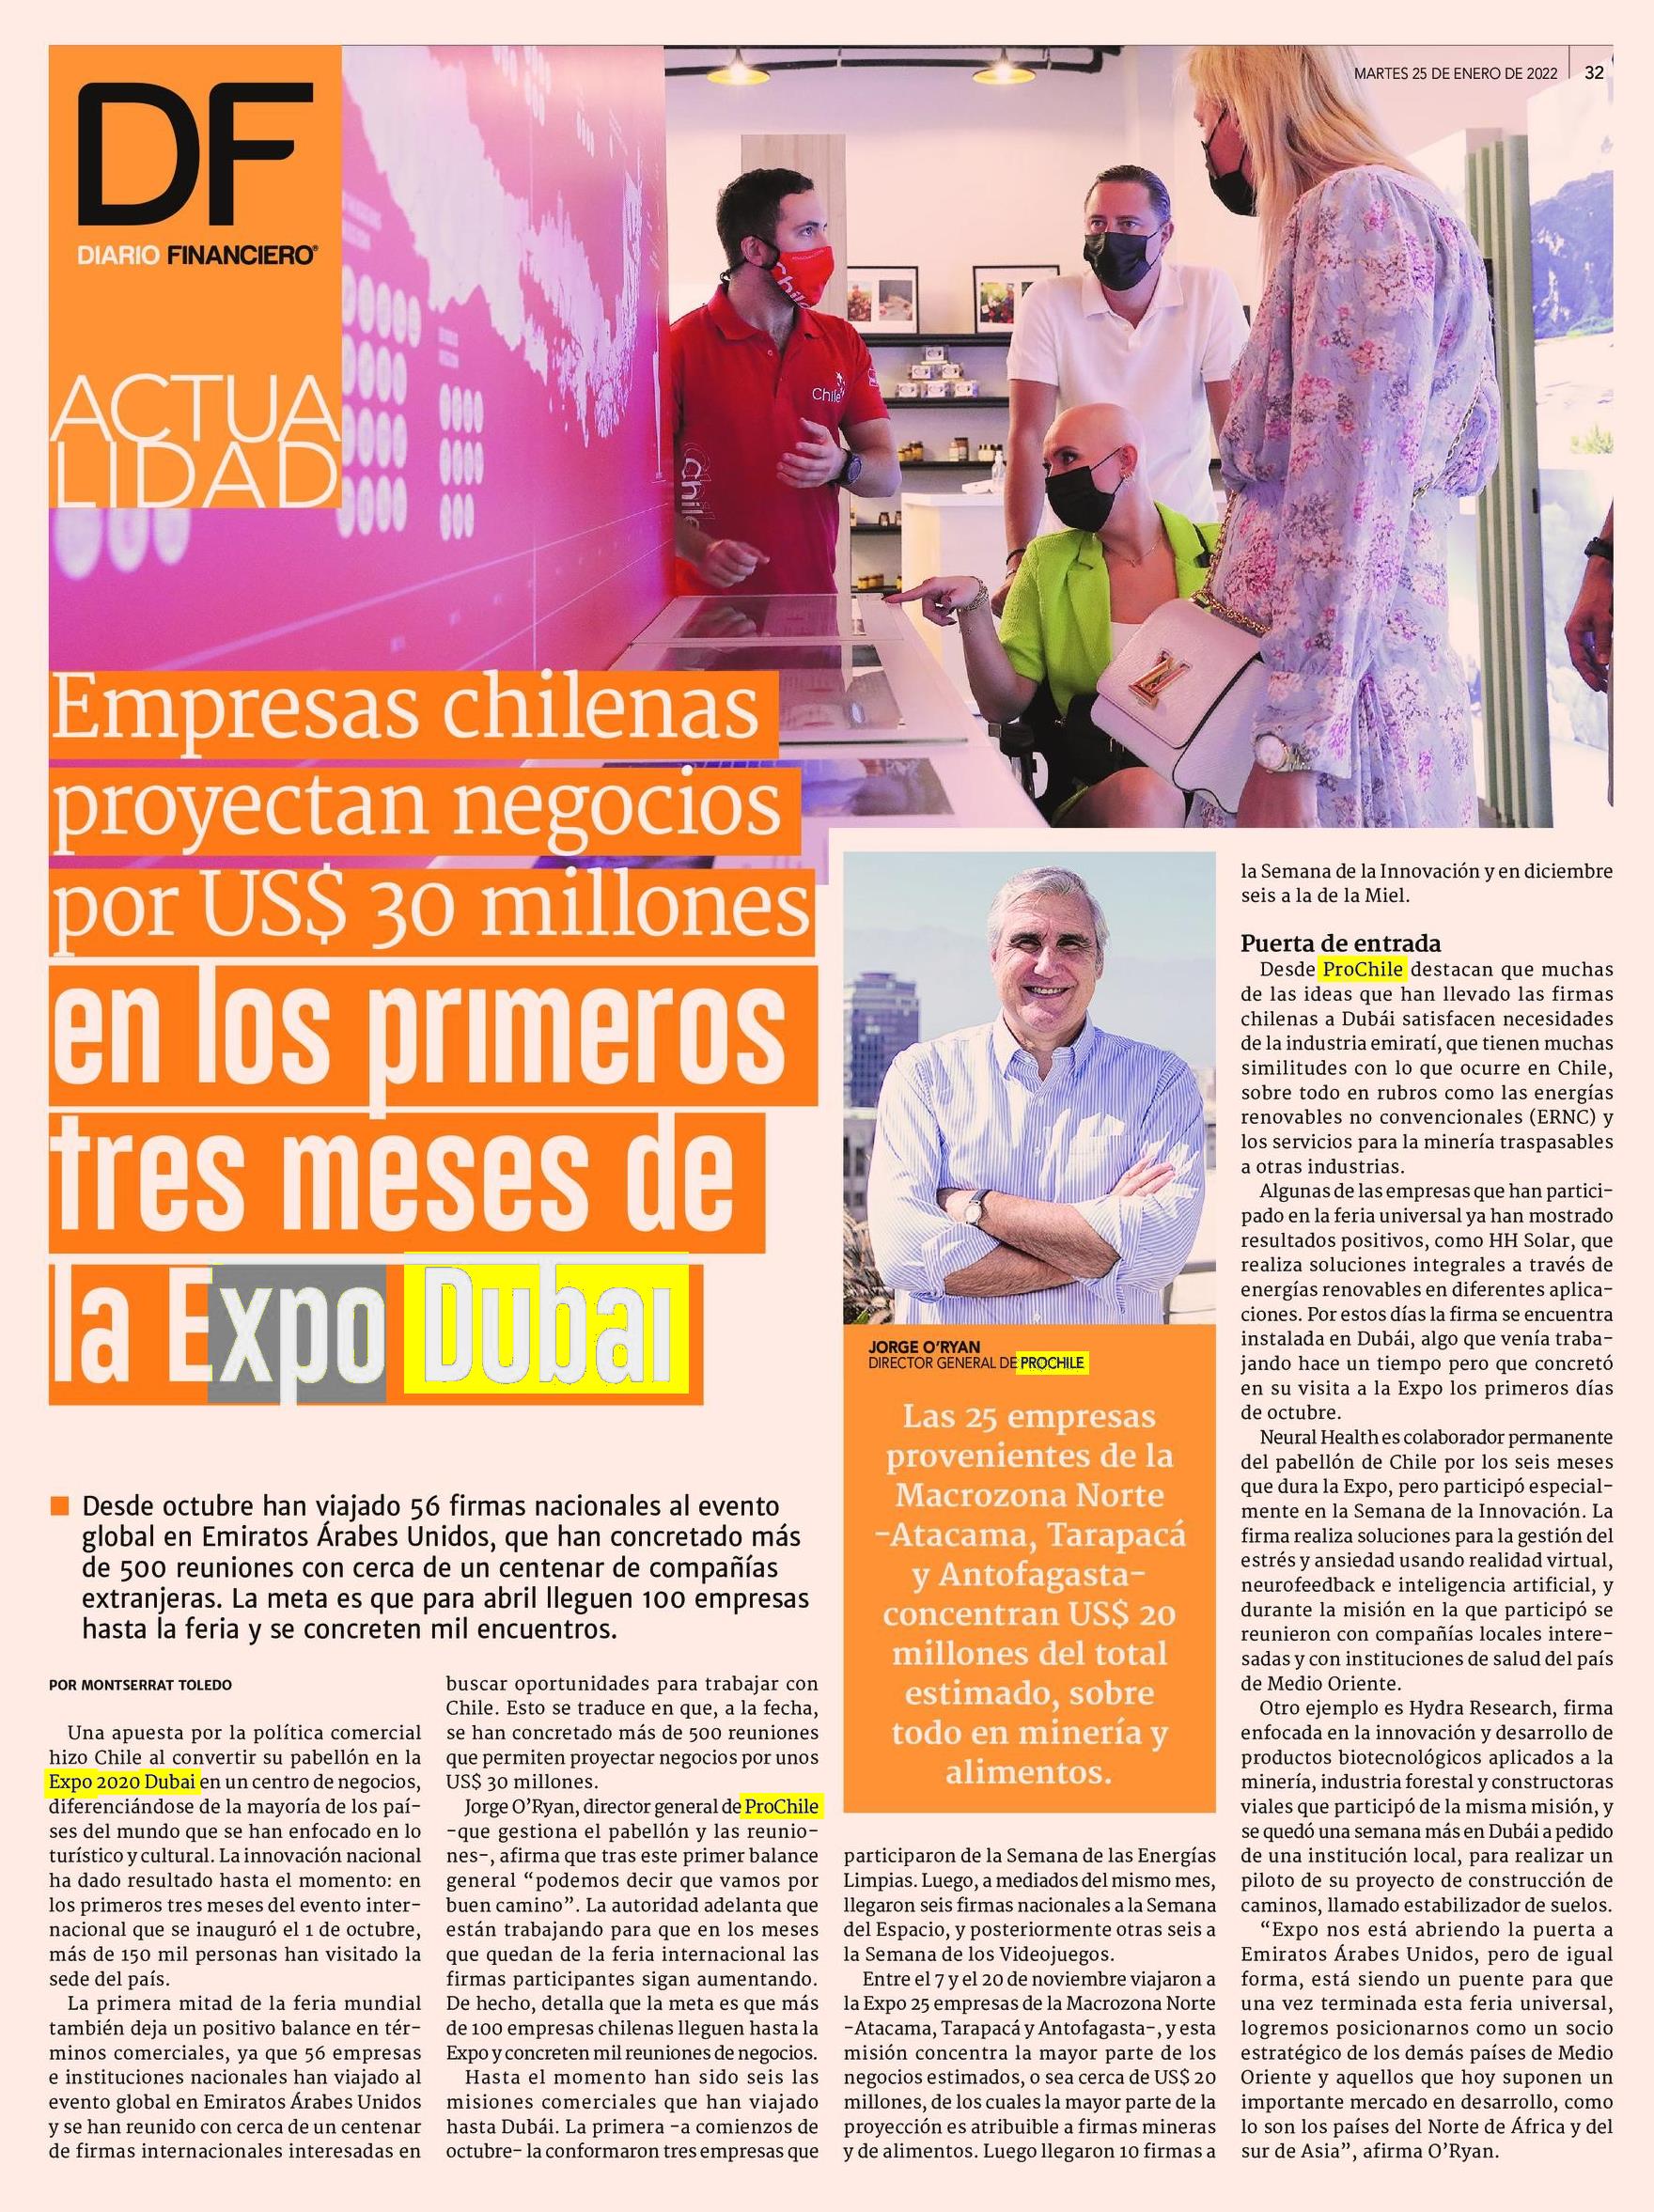 Destacado en Prensa: Empresas chilenas proyectan negocios por US$ 30 millones en los primeros tres meses de la Expo Dubai